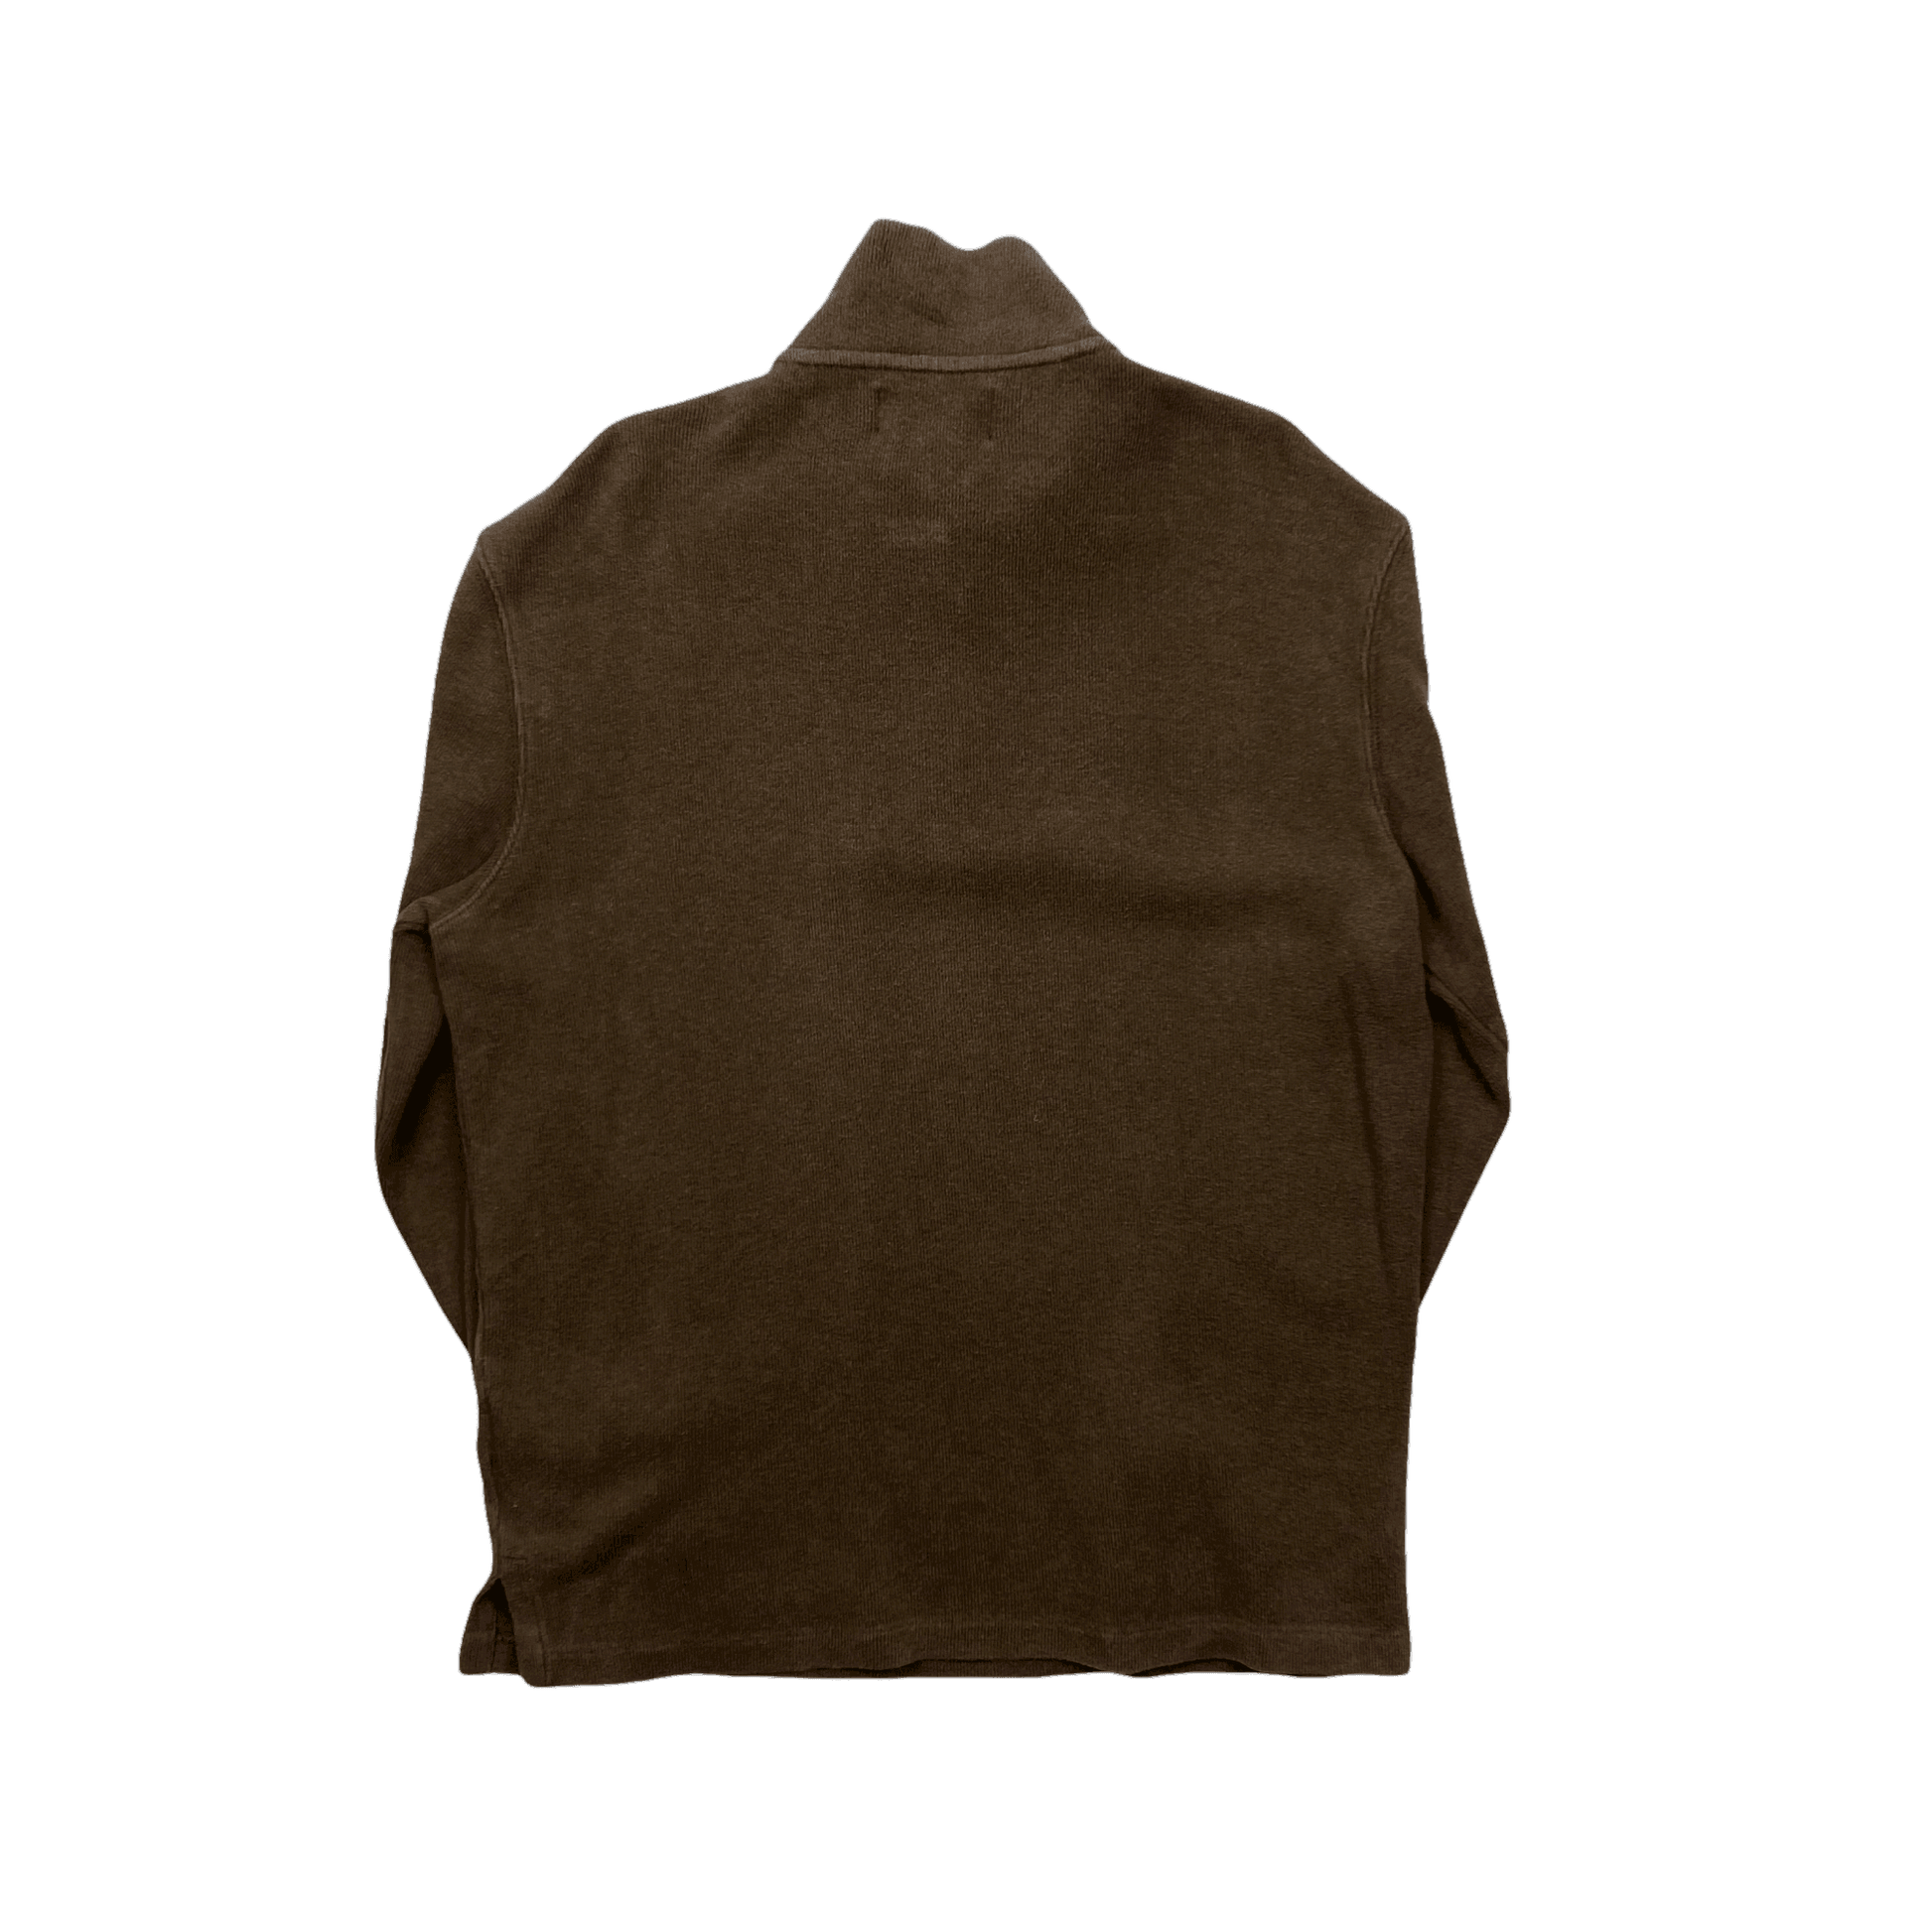 Vintage 90s Brown Polo Ralph Lauren Quarter Zip Sweatshirt - Medium - The Streetwear Studio